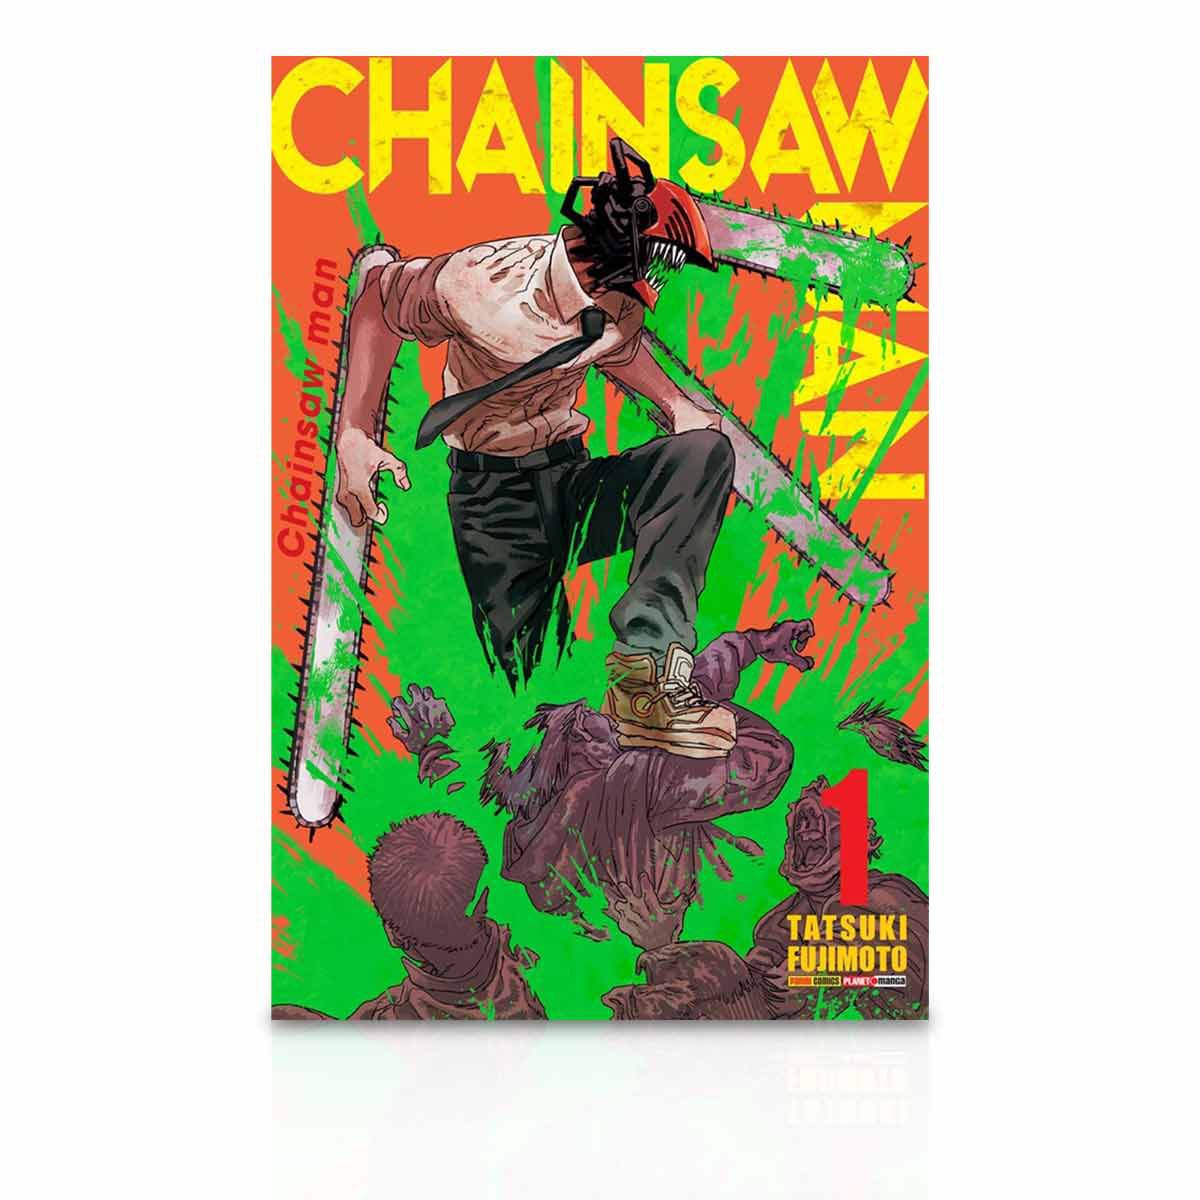 ✓ Chainsaw Man